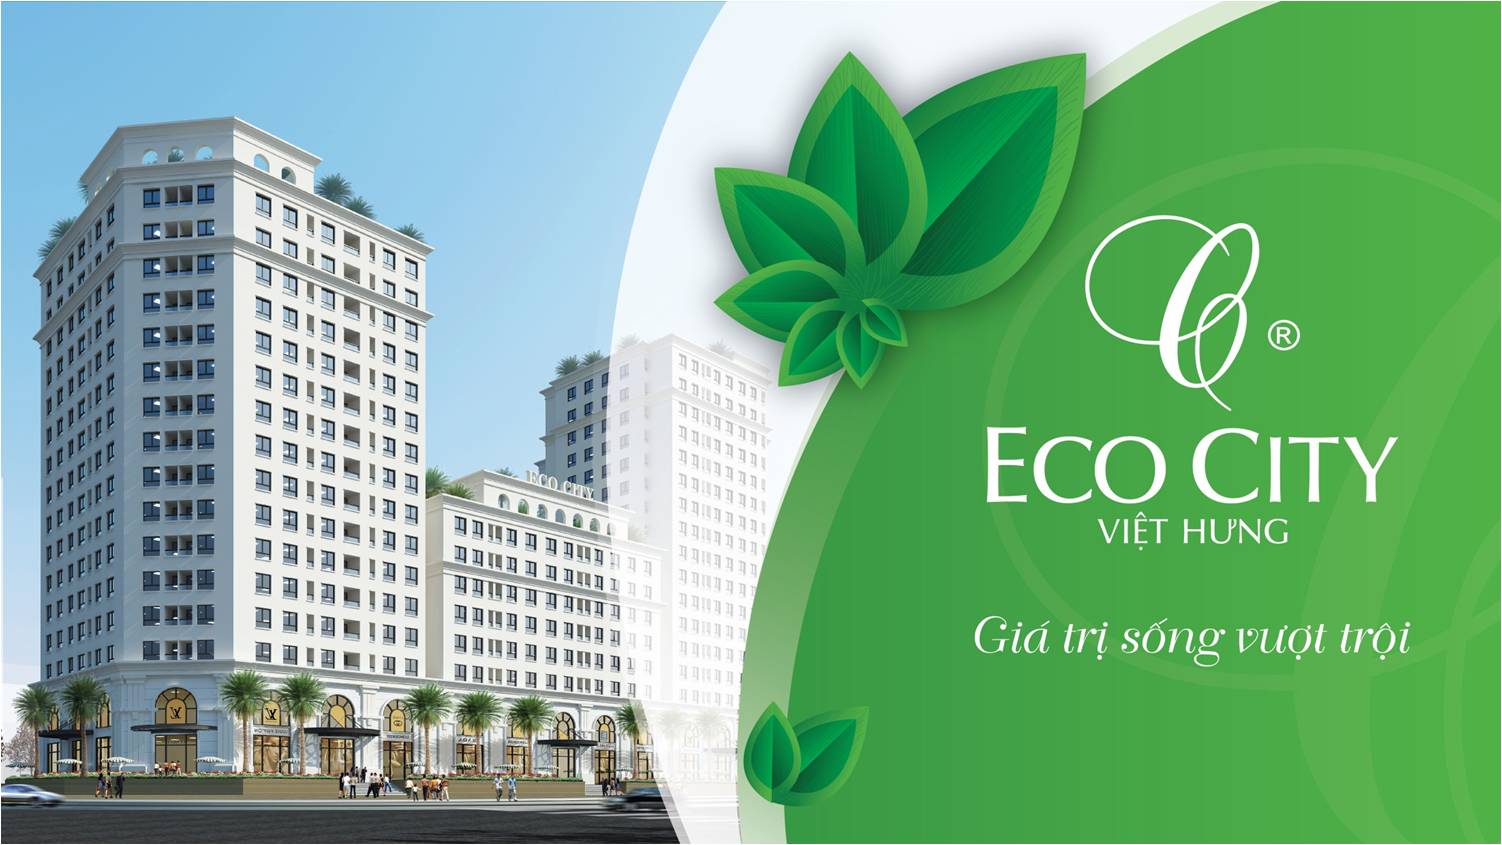 Nhà đất, bất động sản: Tiến độ thi công chung cư Eco City Việt Hưng Long Biên  Chung-cu-eco-city-gi-tri-song-vuot-troi